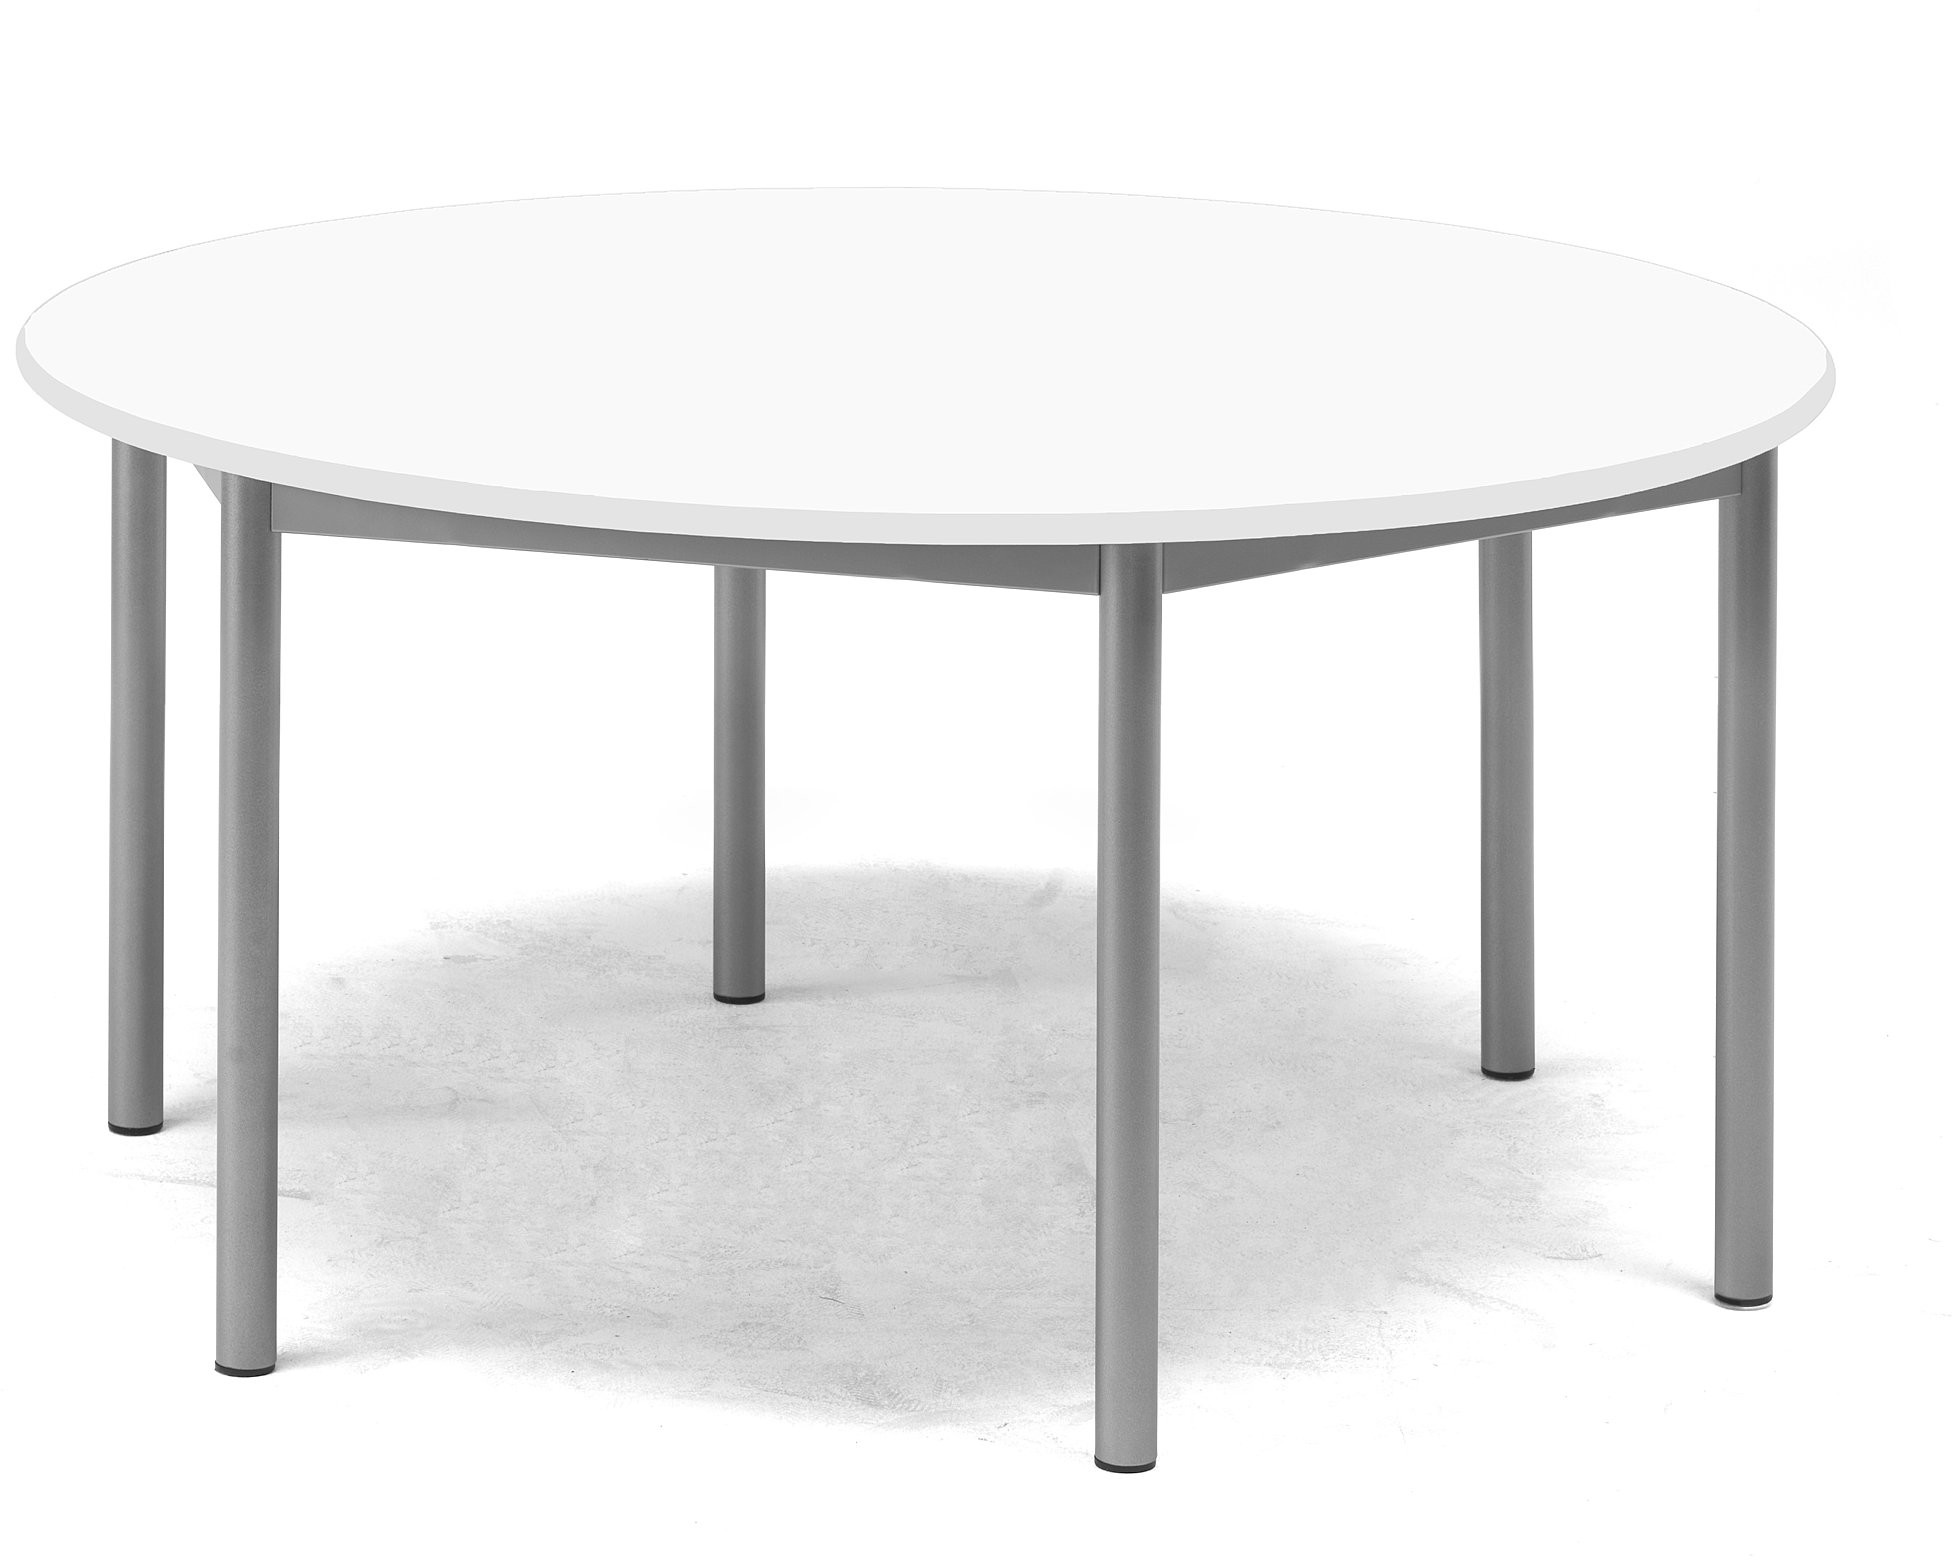 AJ Produkty Stół Bors, 1200x600 mm, rama srebrna, dźwiękochłonny HPL, biały